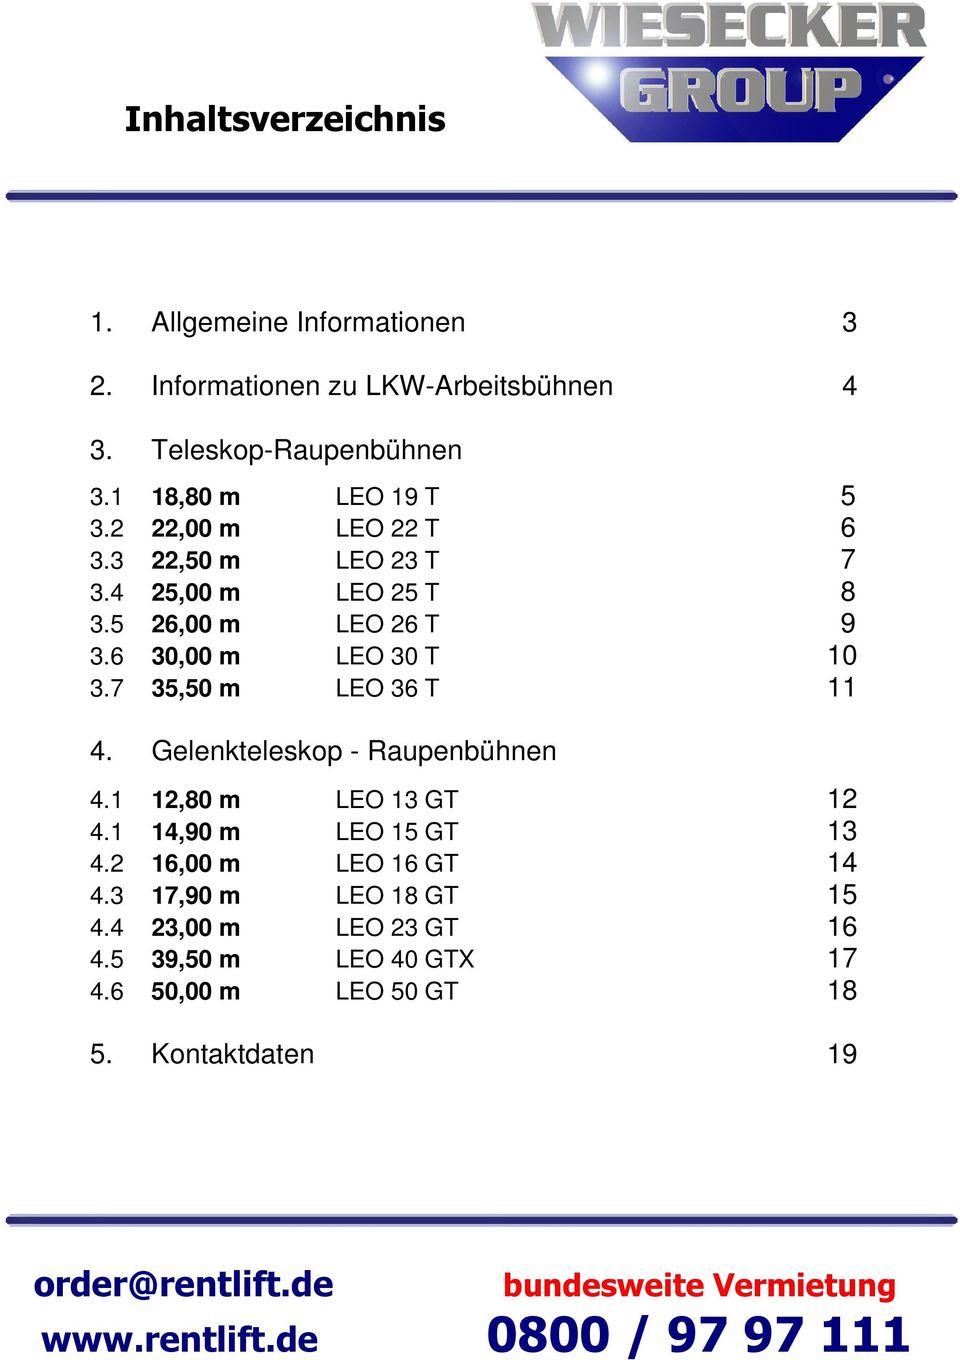 6 30,00 m LEO 30 T 10 3.7 35,50 m LEO 36 T 11 4. Gelenkteleskop - Raupenbühnen 4.1 12,80 m LEO 13 GT 12 4.